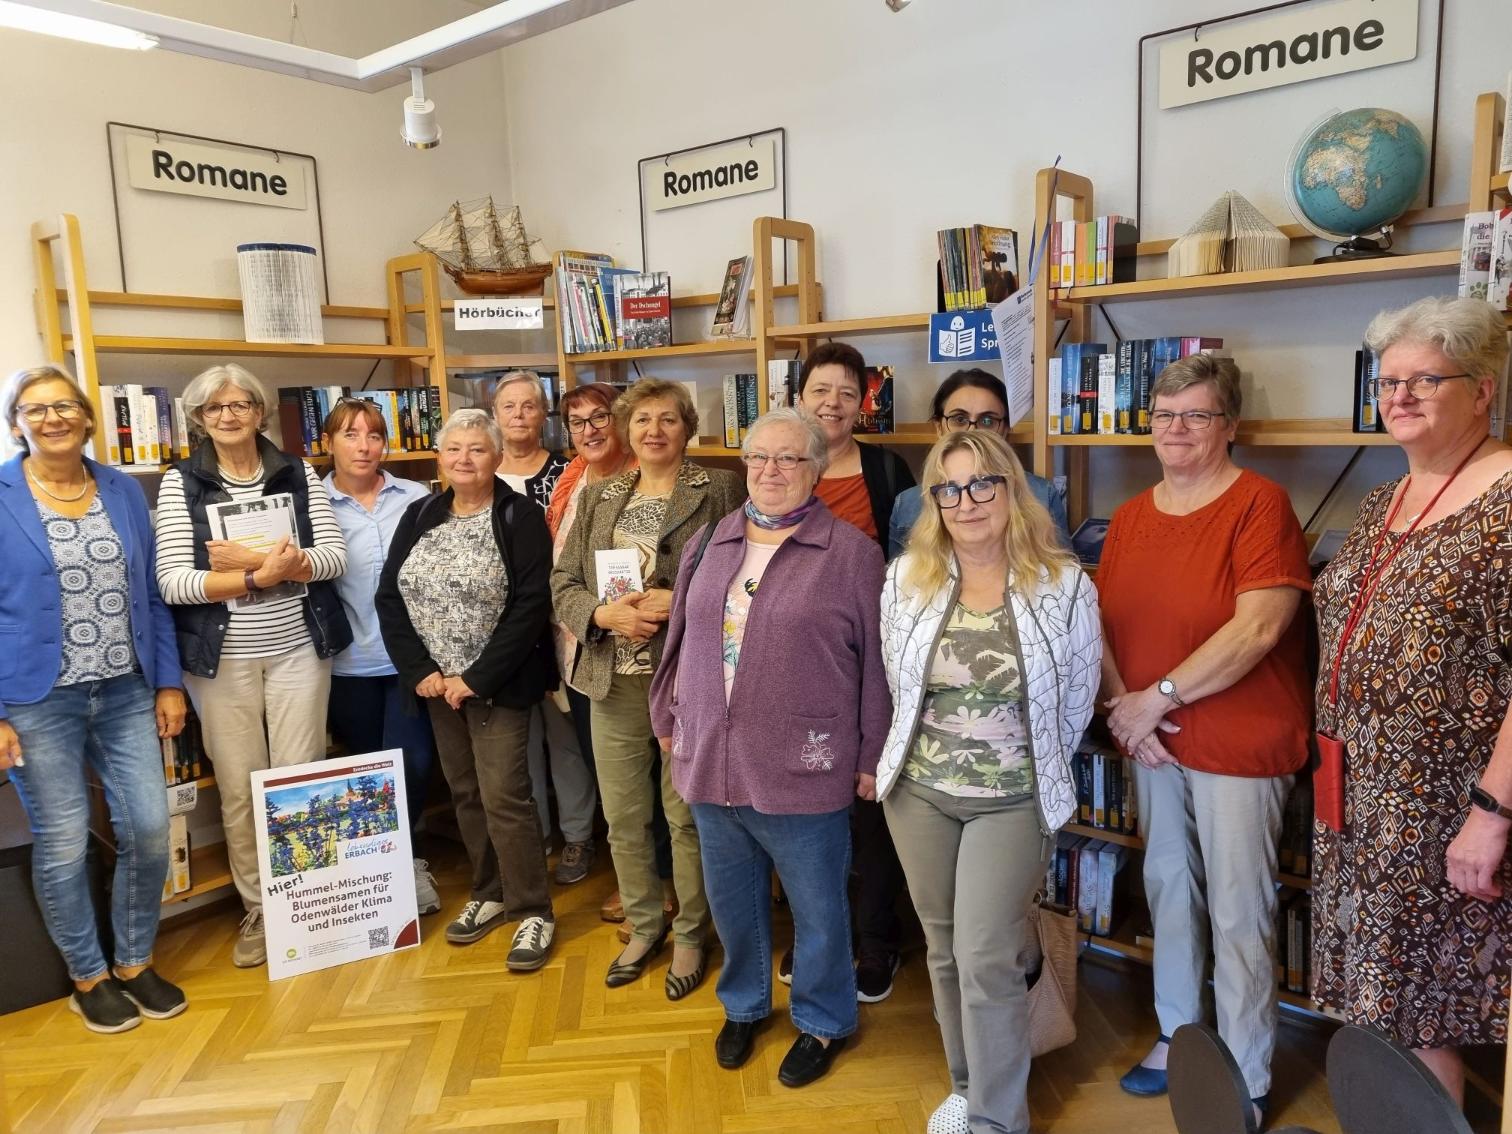 Die Ehrenamtlichen der Kinder-Kleider-Kiste unter Begleitung von Koordinatorin Brigitte Wittmann (links) beim Besuch in der Bücherei, die von Ursula Weiers (2. Von rechts) vorgestellt wurde. (c) Bücherei St. Sophia (KÖB)/WW